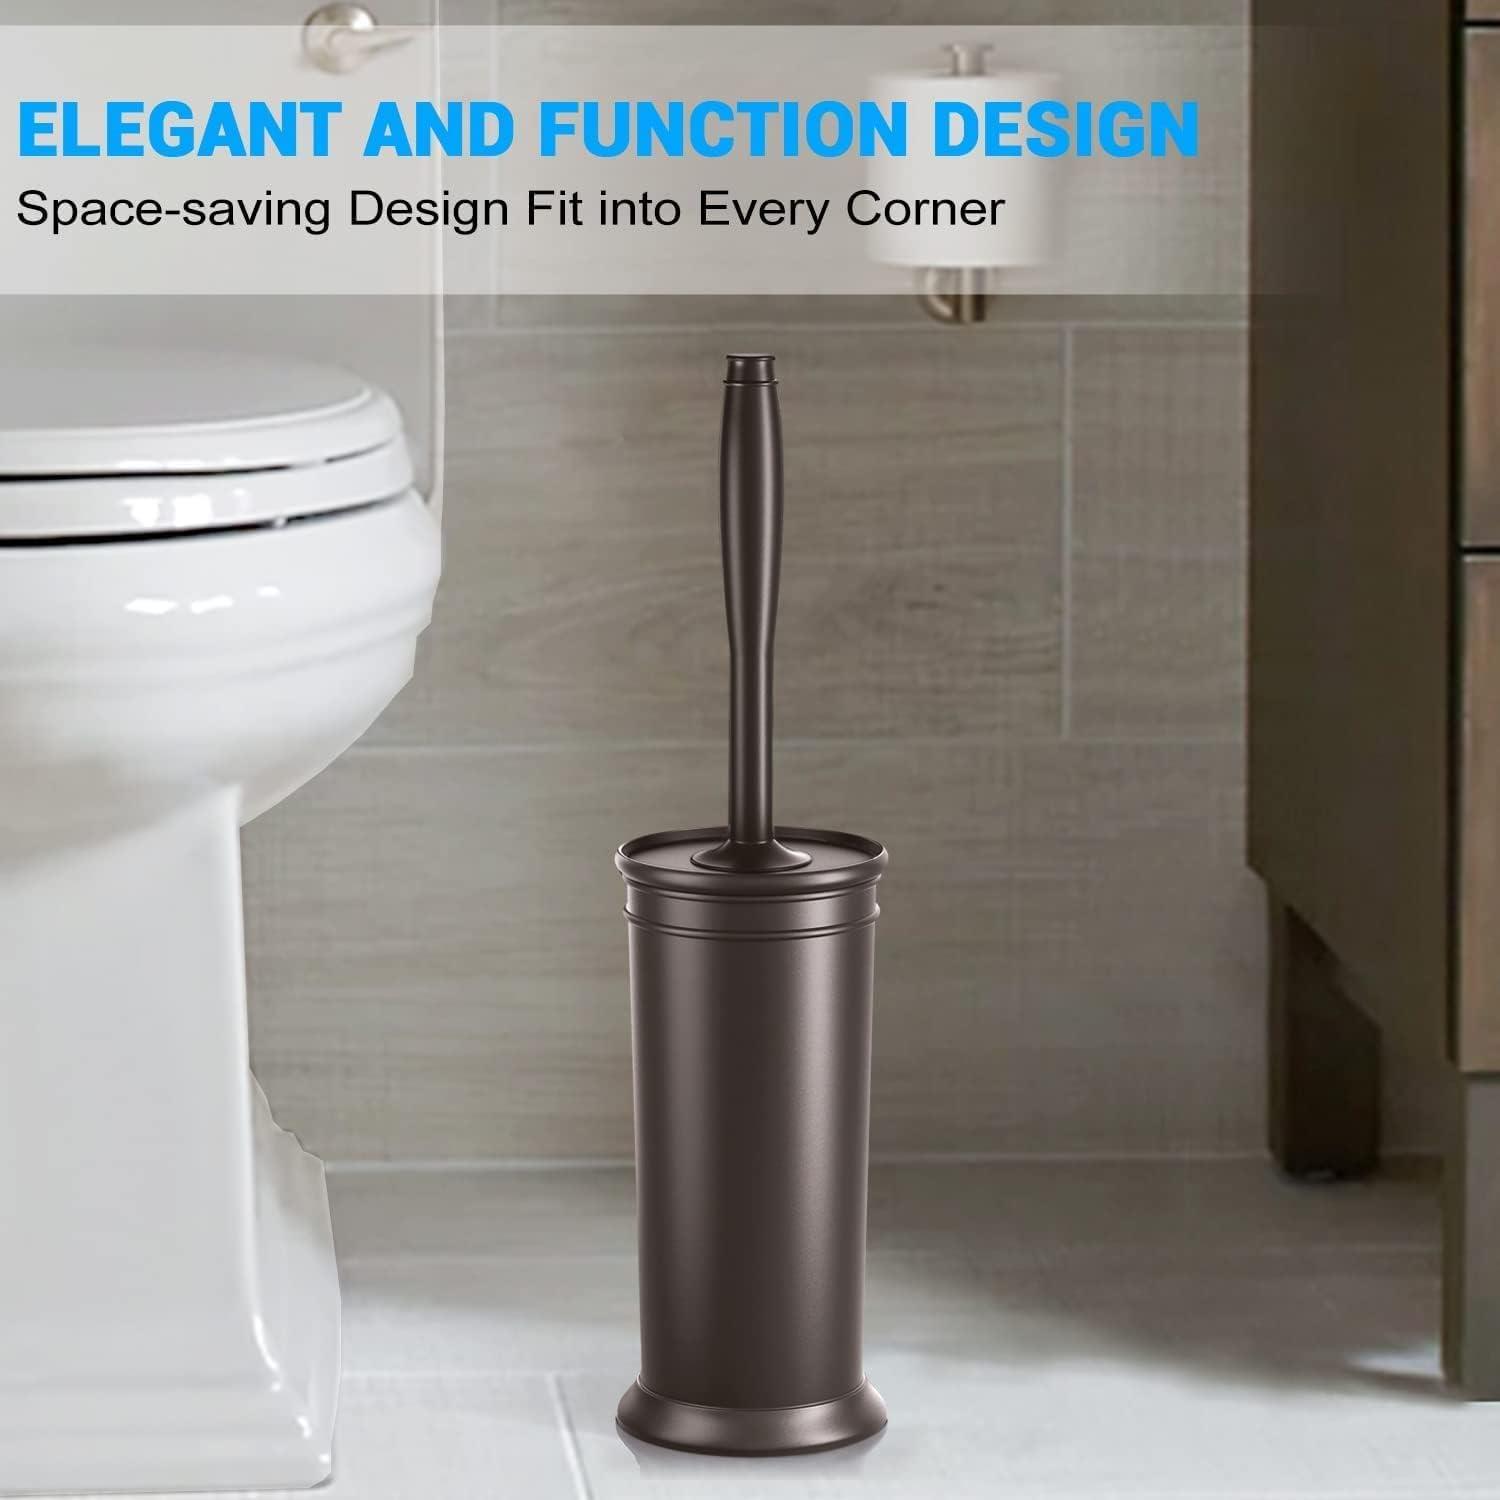 Designer Toilet Bowl Brush (2-Pack)